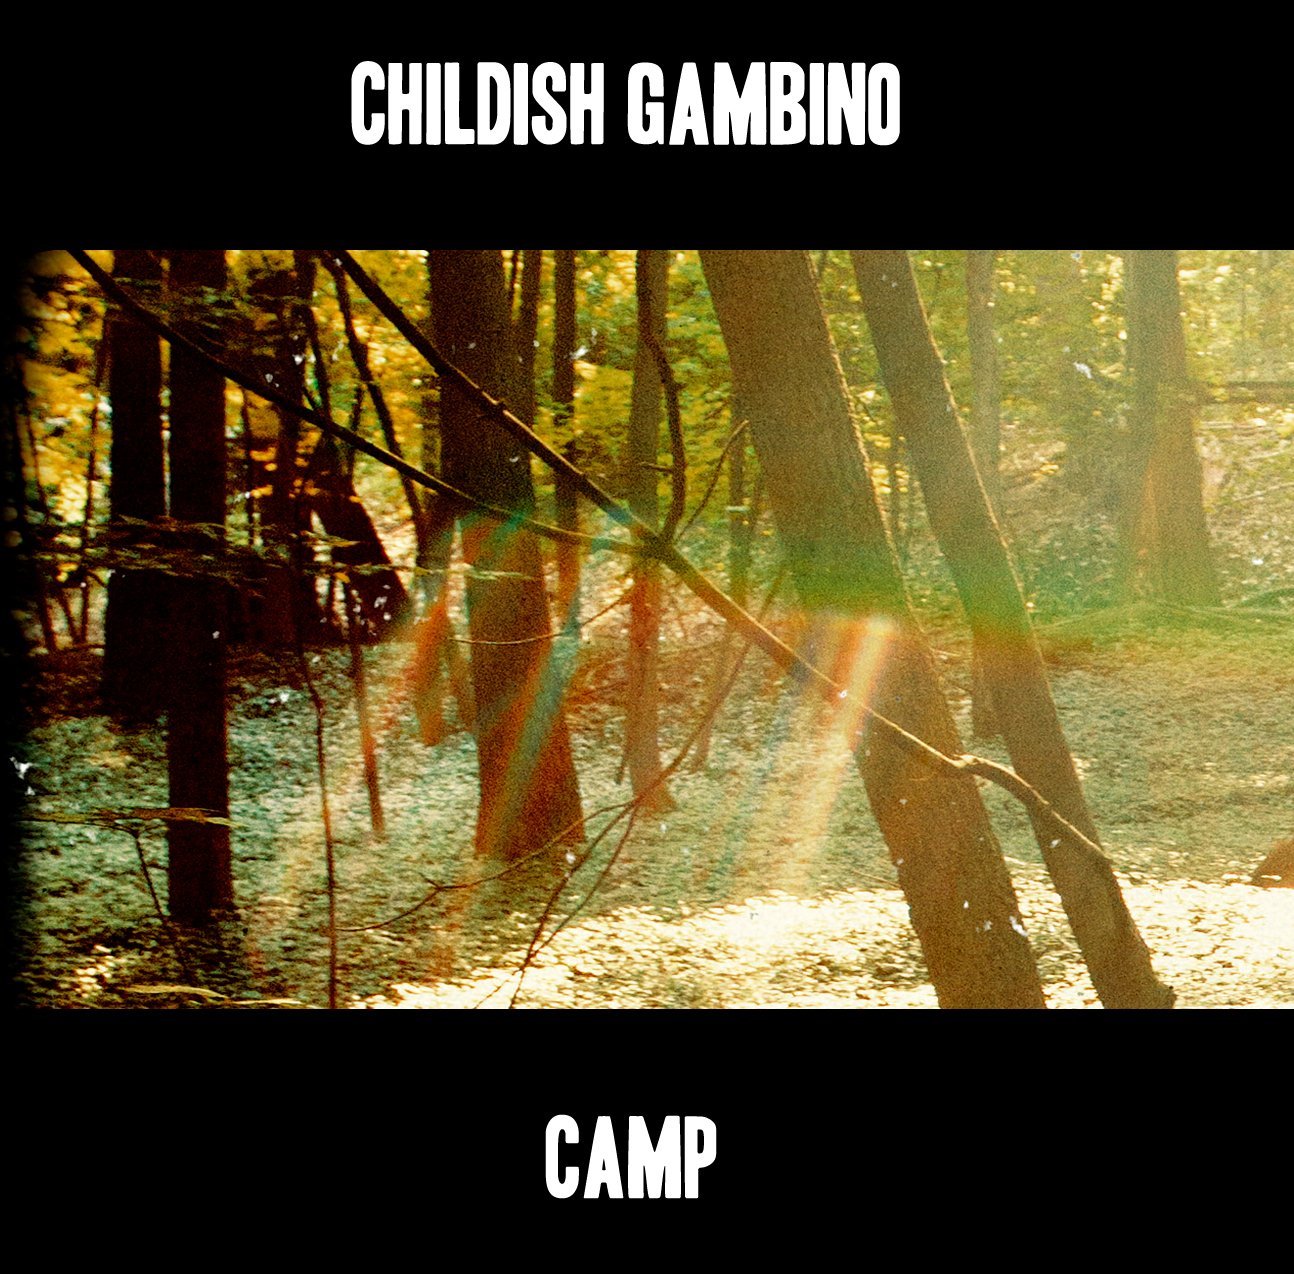 Album Art for Camp by Childish Gambino